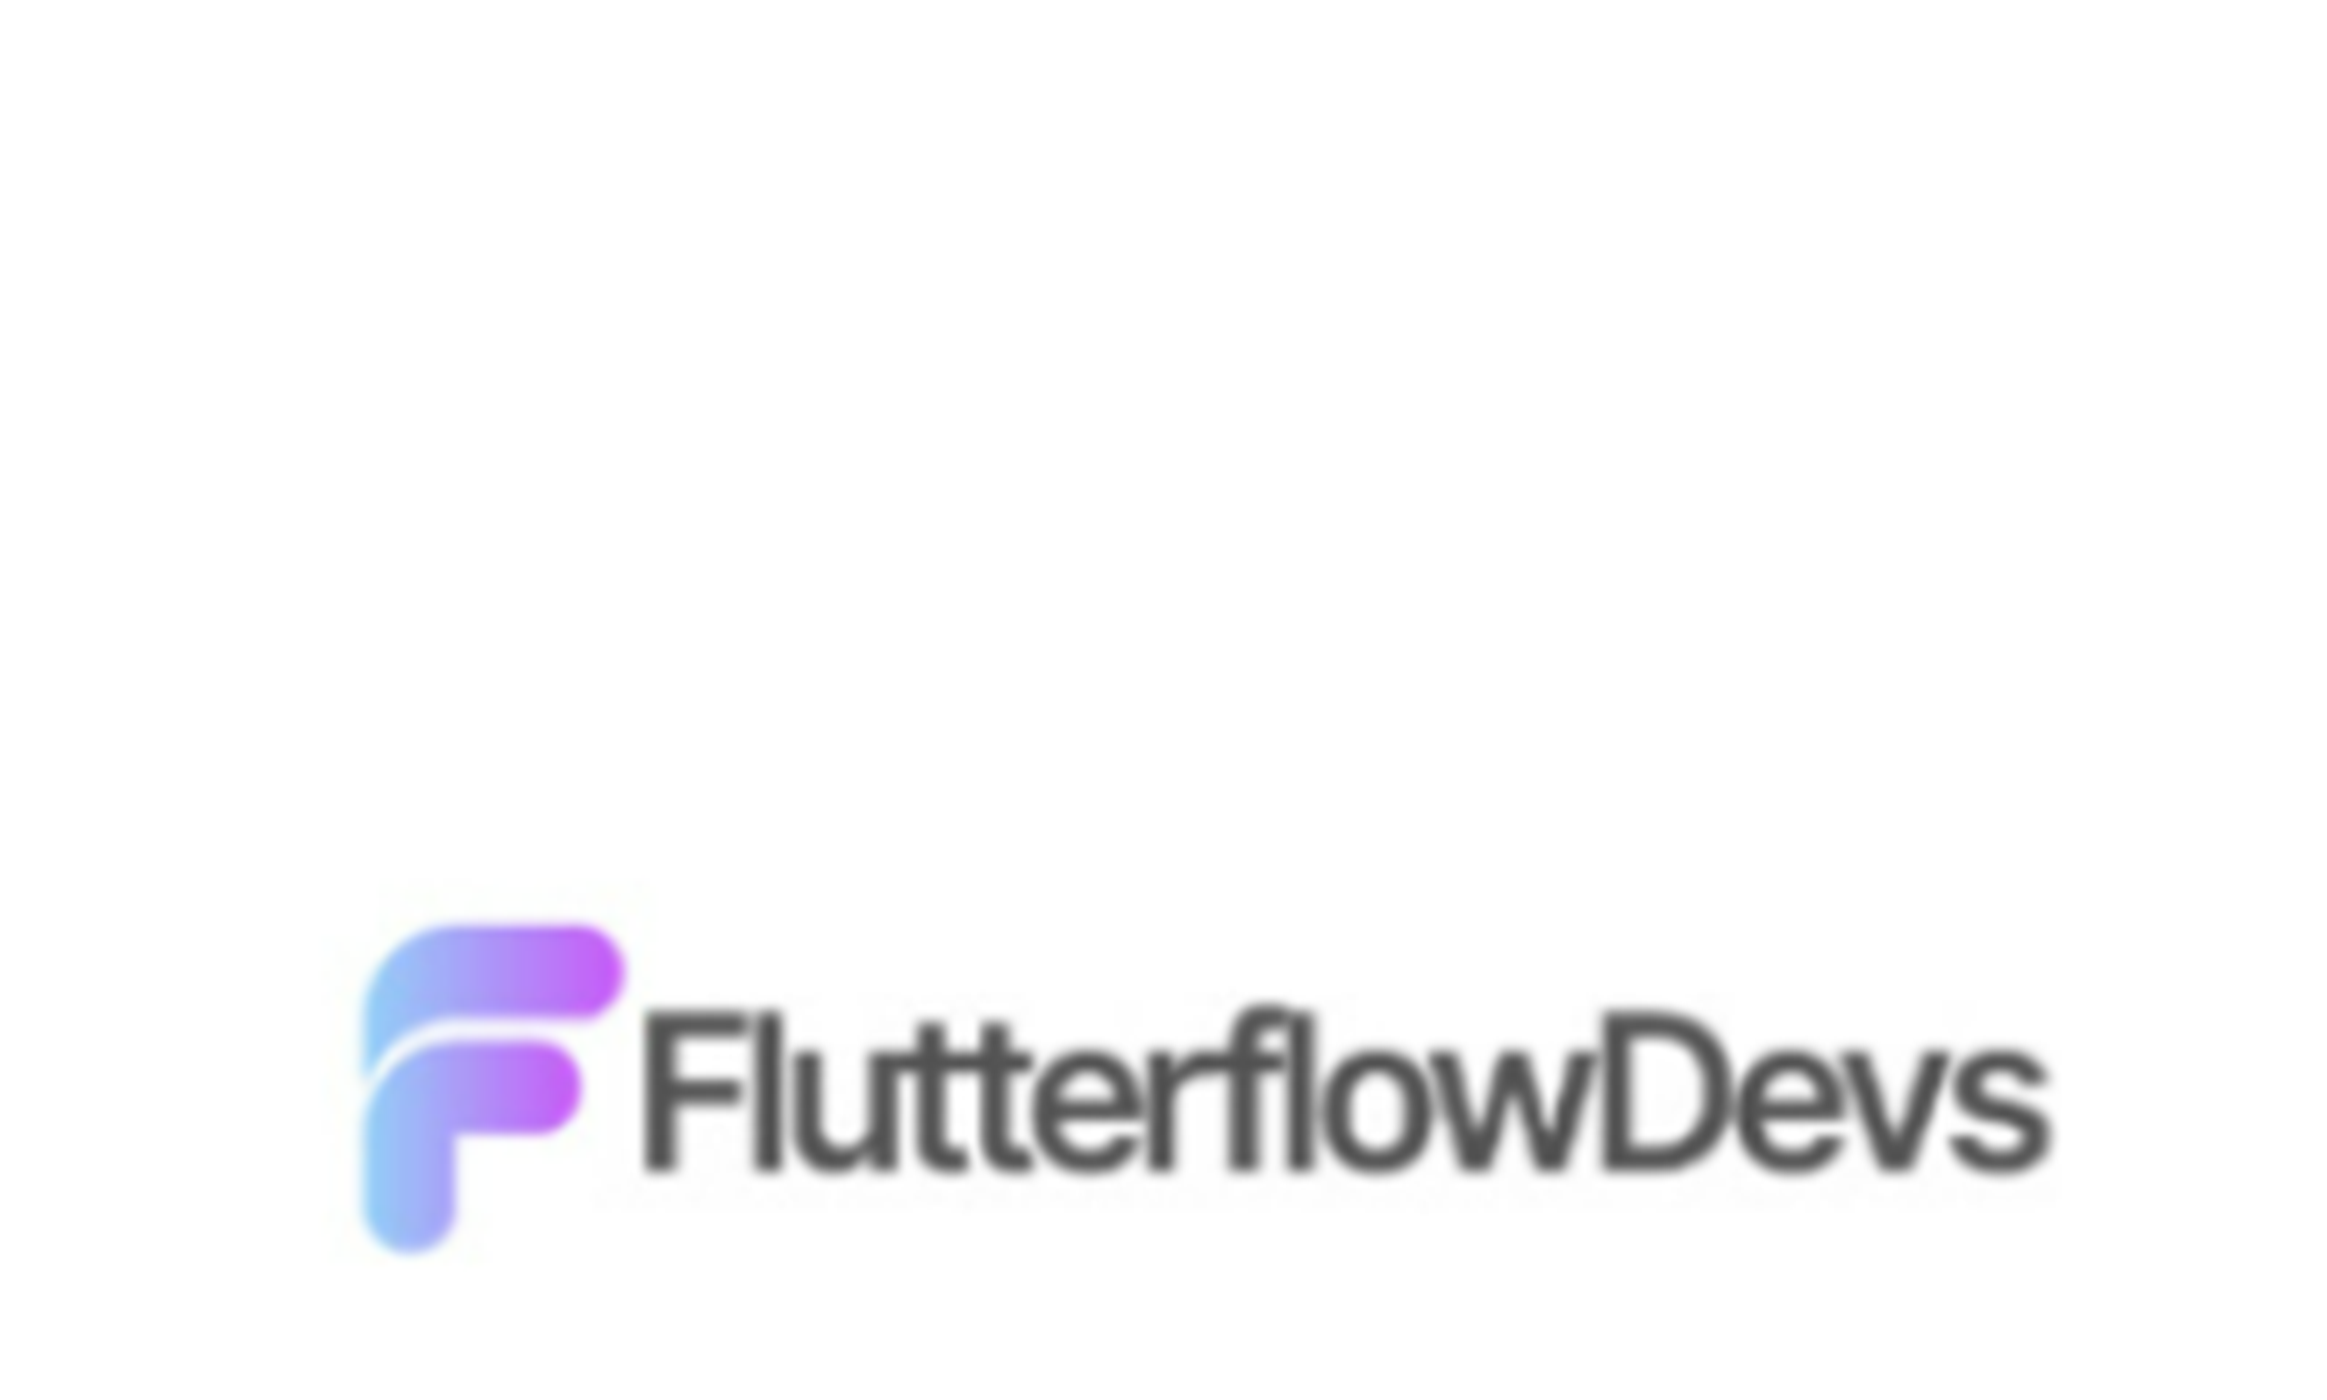 flutterflow devss logo